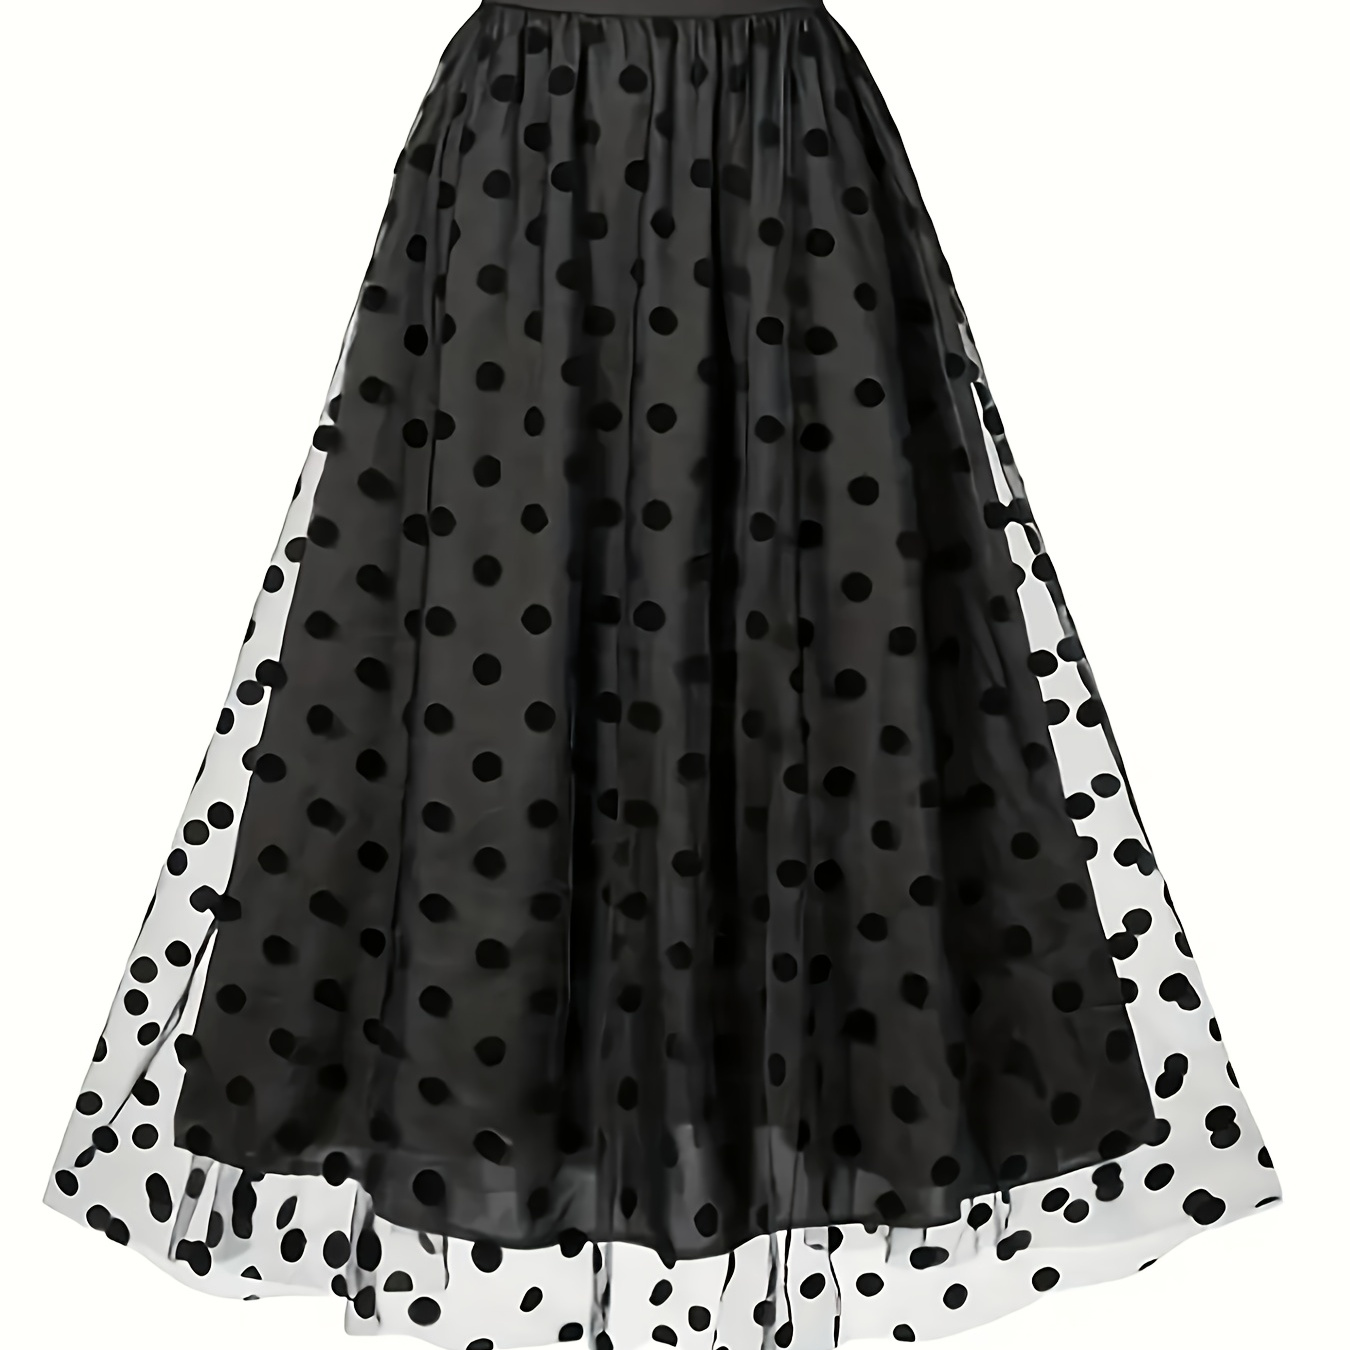 

Polka Dot Tiered Mesh Skirt, Elegant High Waist Flared Midi Skirt, Women's Clothing